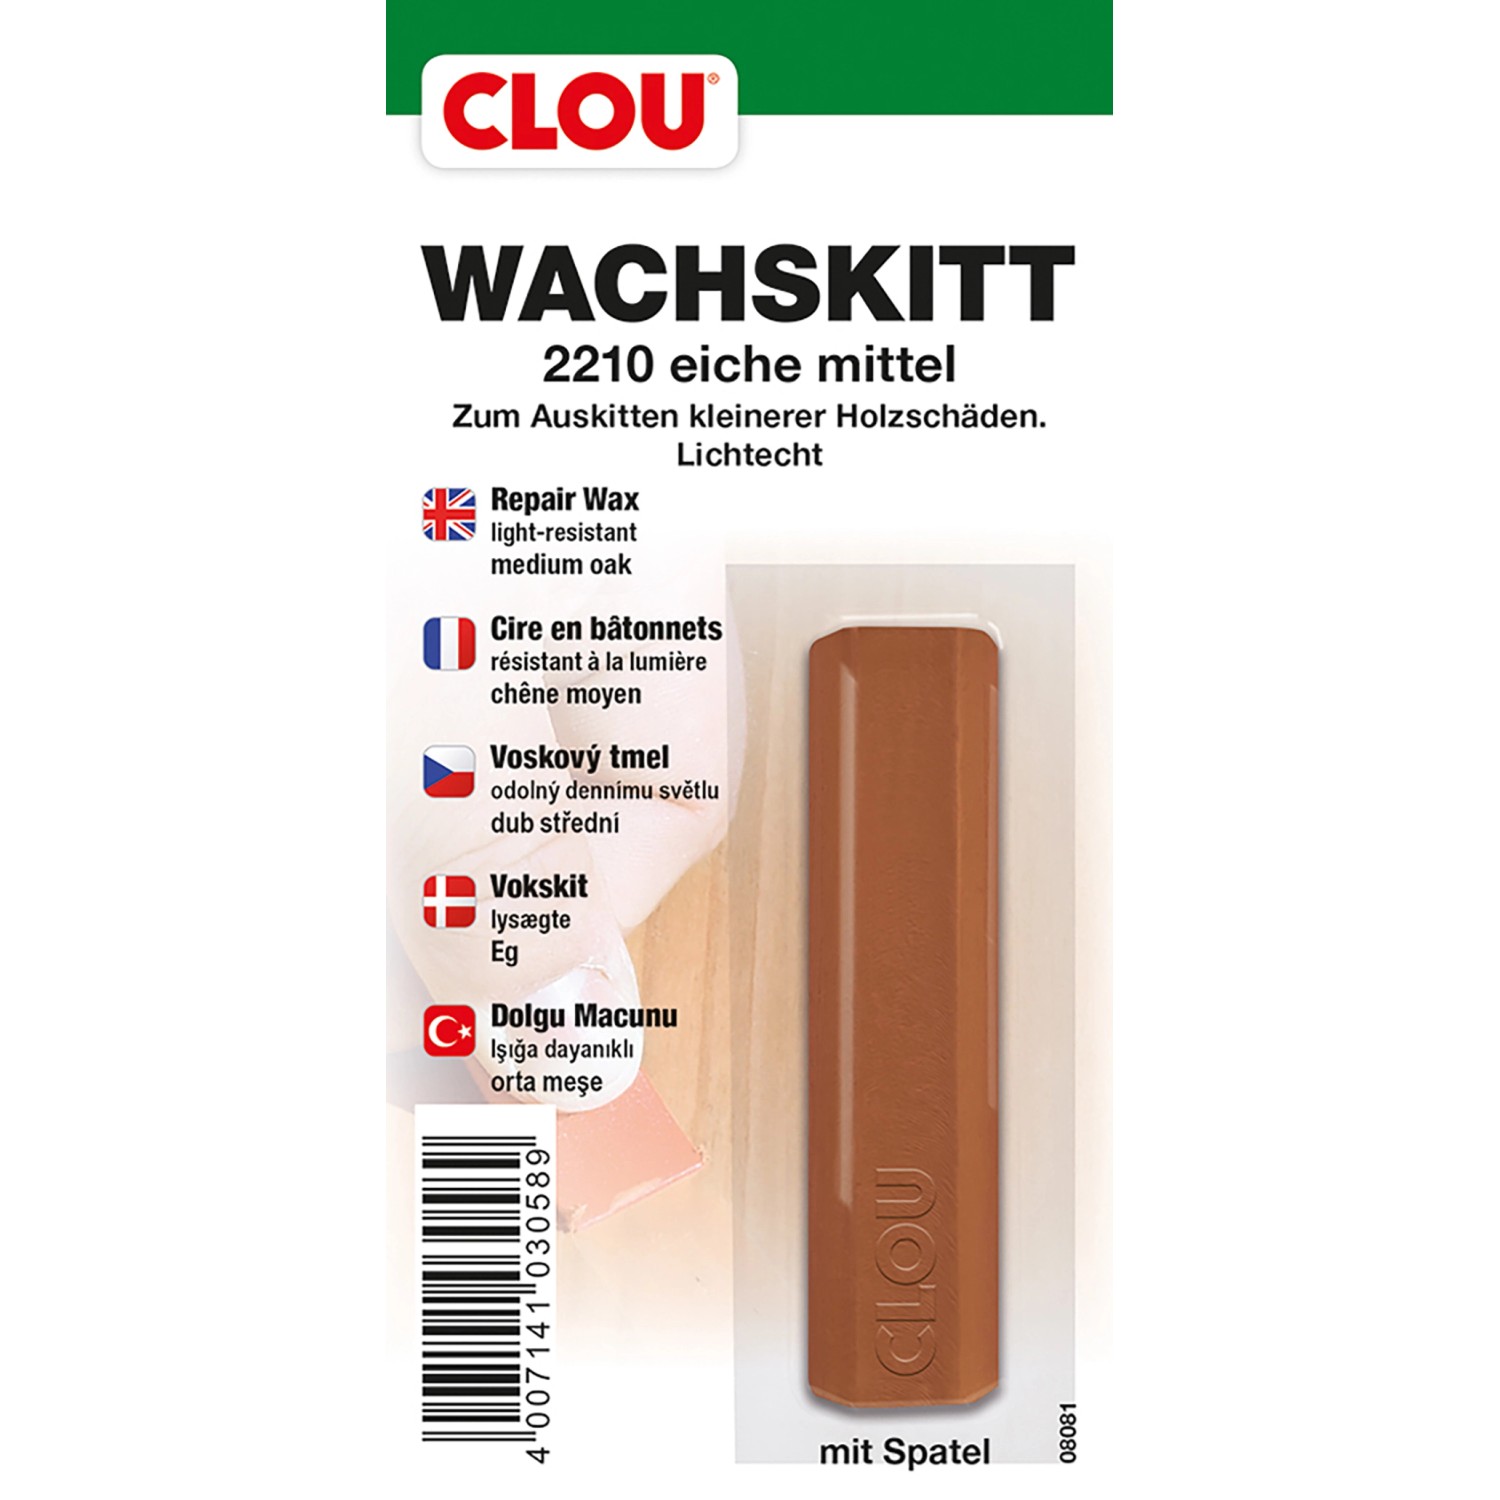 Clou Wachskitt Eiche Mittel von CLOU